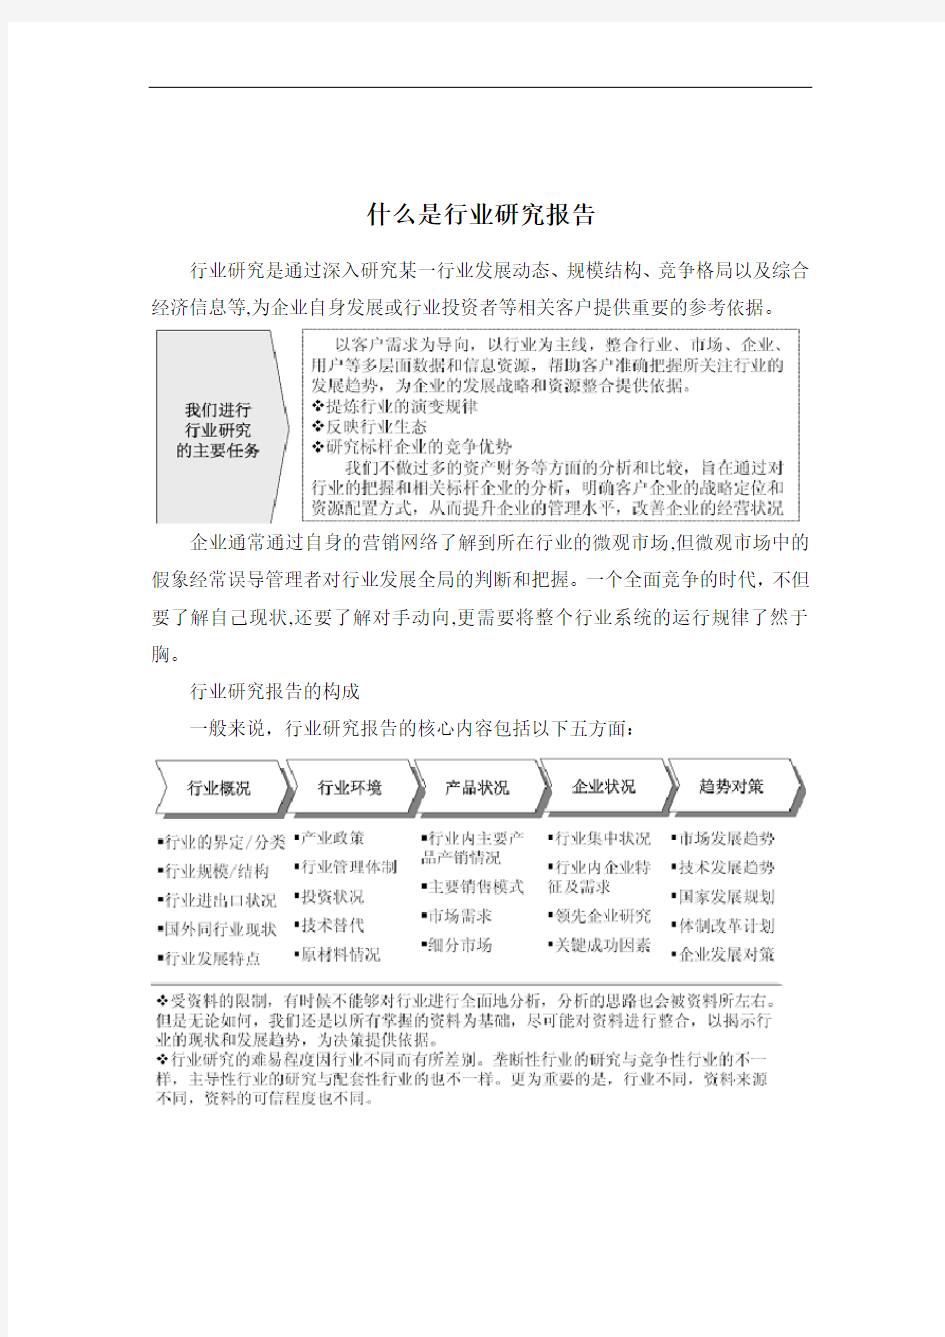 XXXX-2019年中国搪瓷制品行业全景调研与市场竞争态势报告